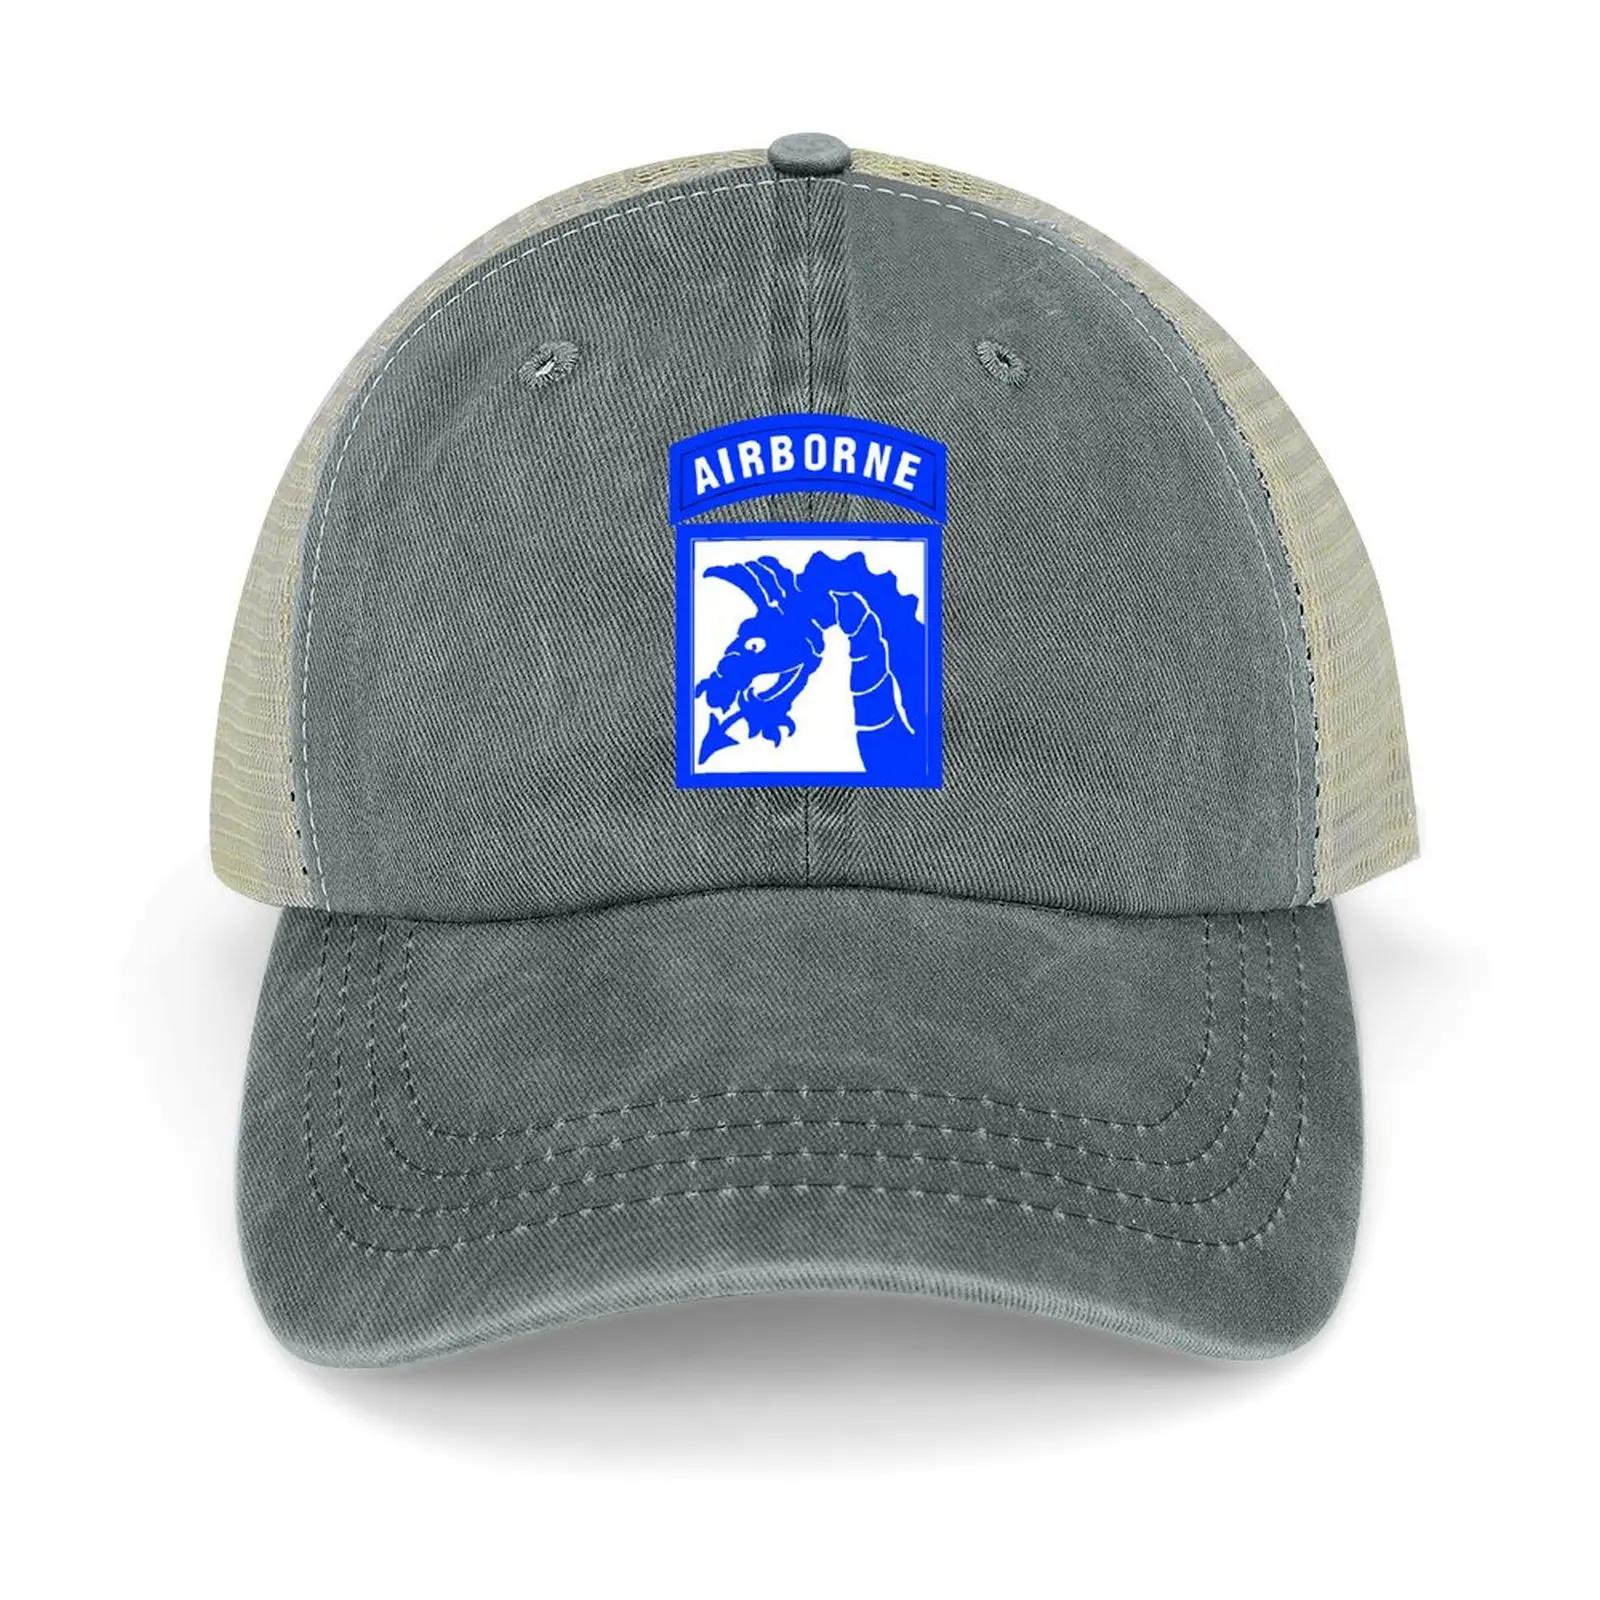 XVIII 공군 군단 카우보이 모자, 태양 모자, 브랜드 남성 모자, 골프웨어, 여성 모자